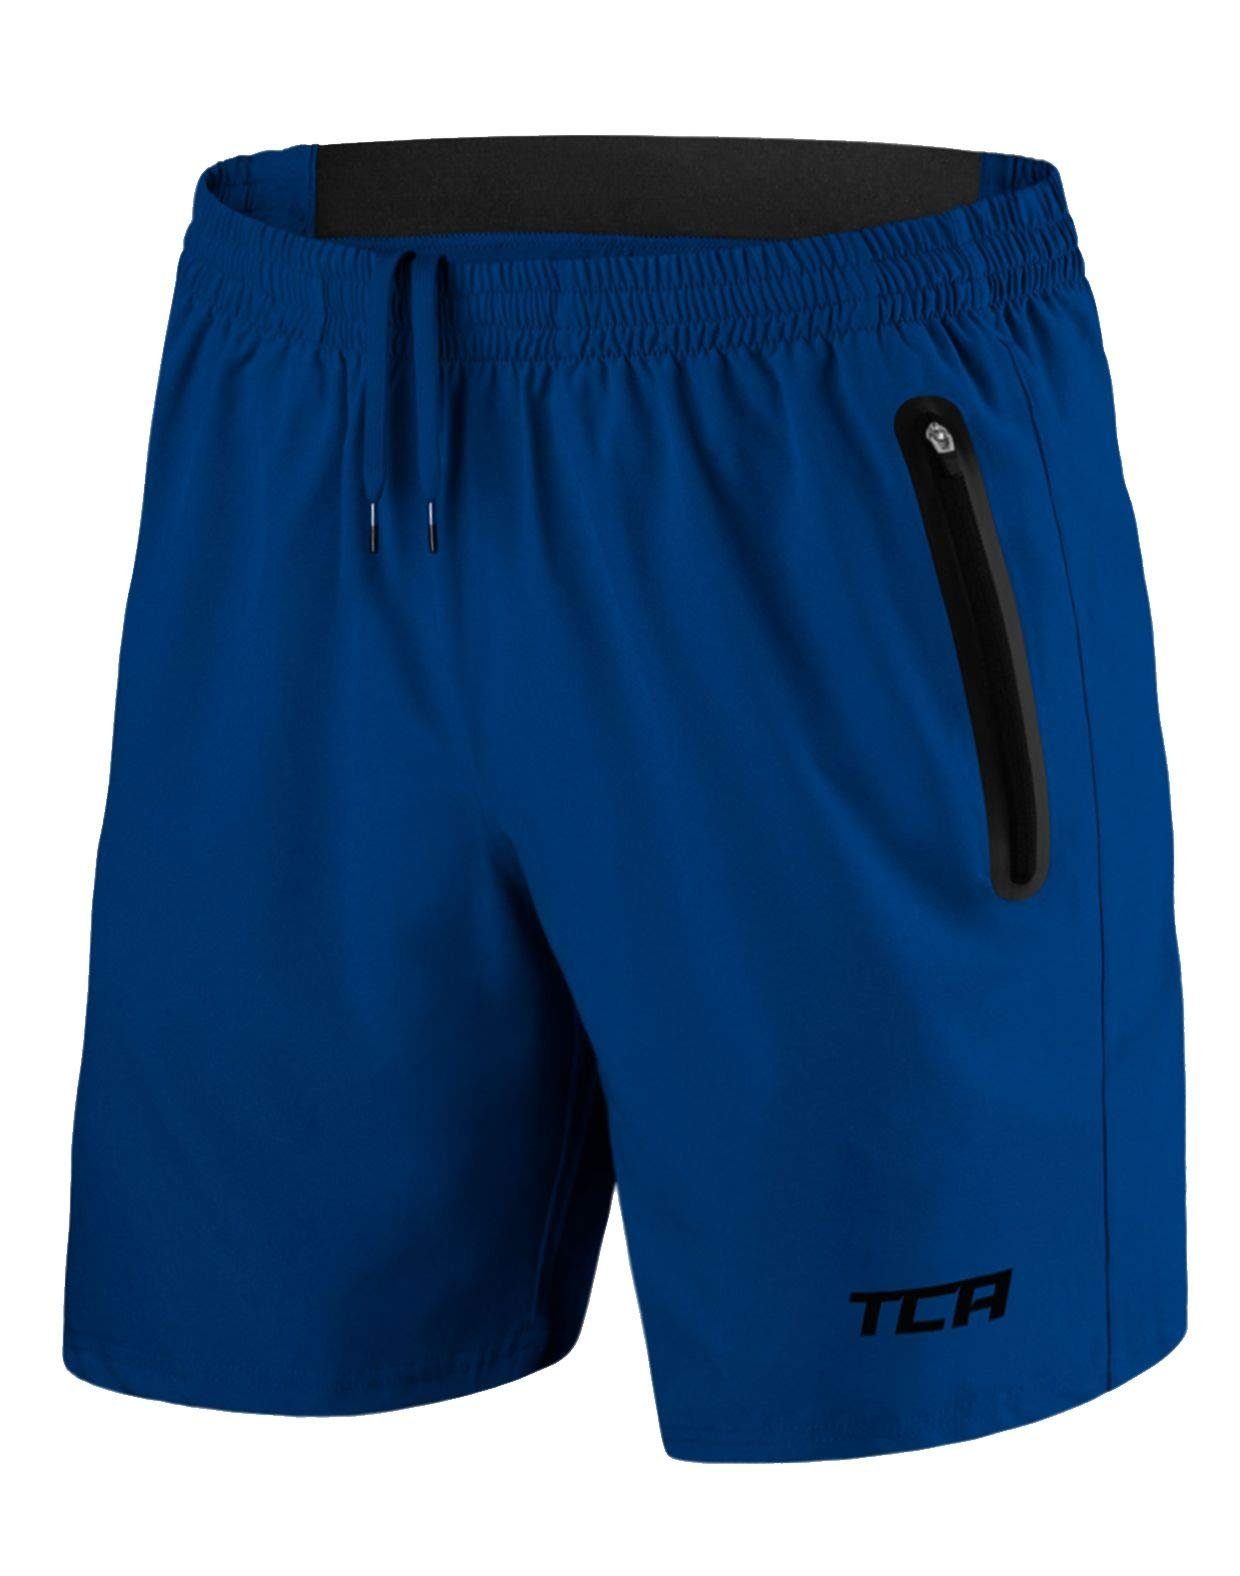 TCA Trainingsshorts TCA Herren Elite Tech Laufhose mit Reißverschlusstaschen - Blau